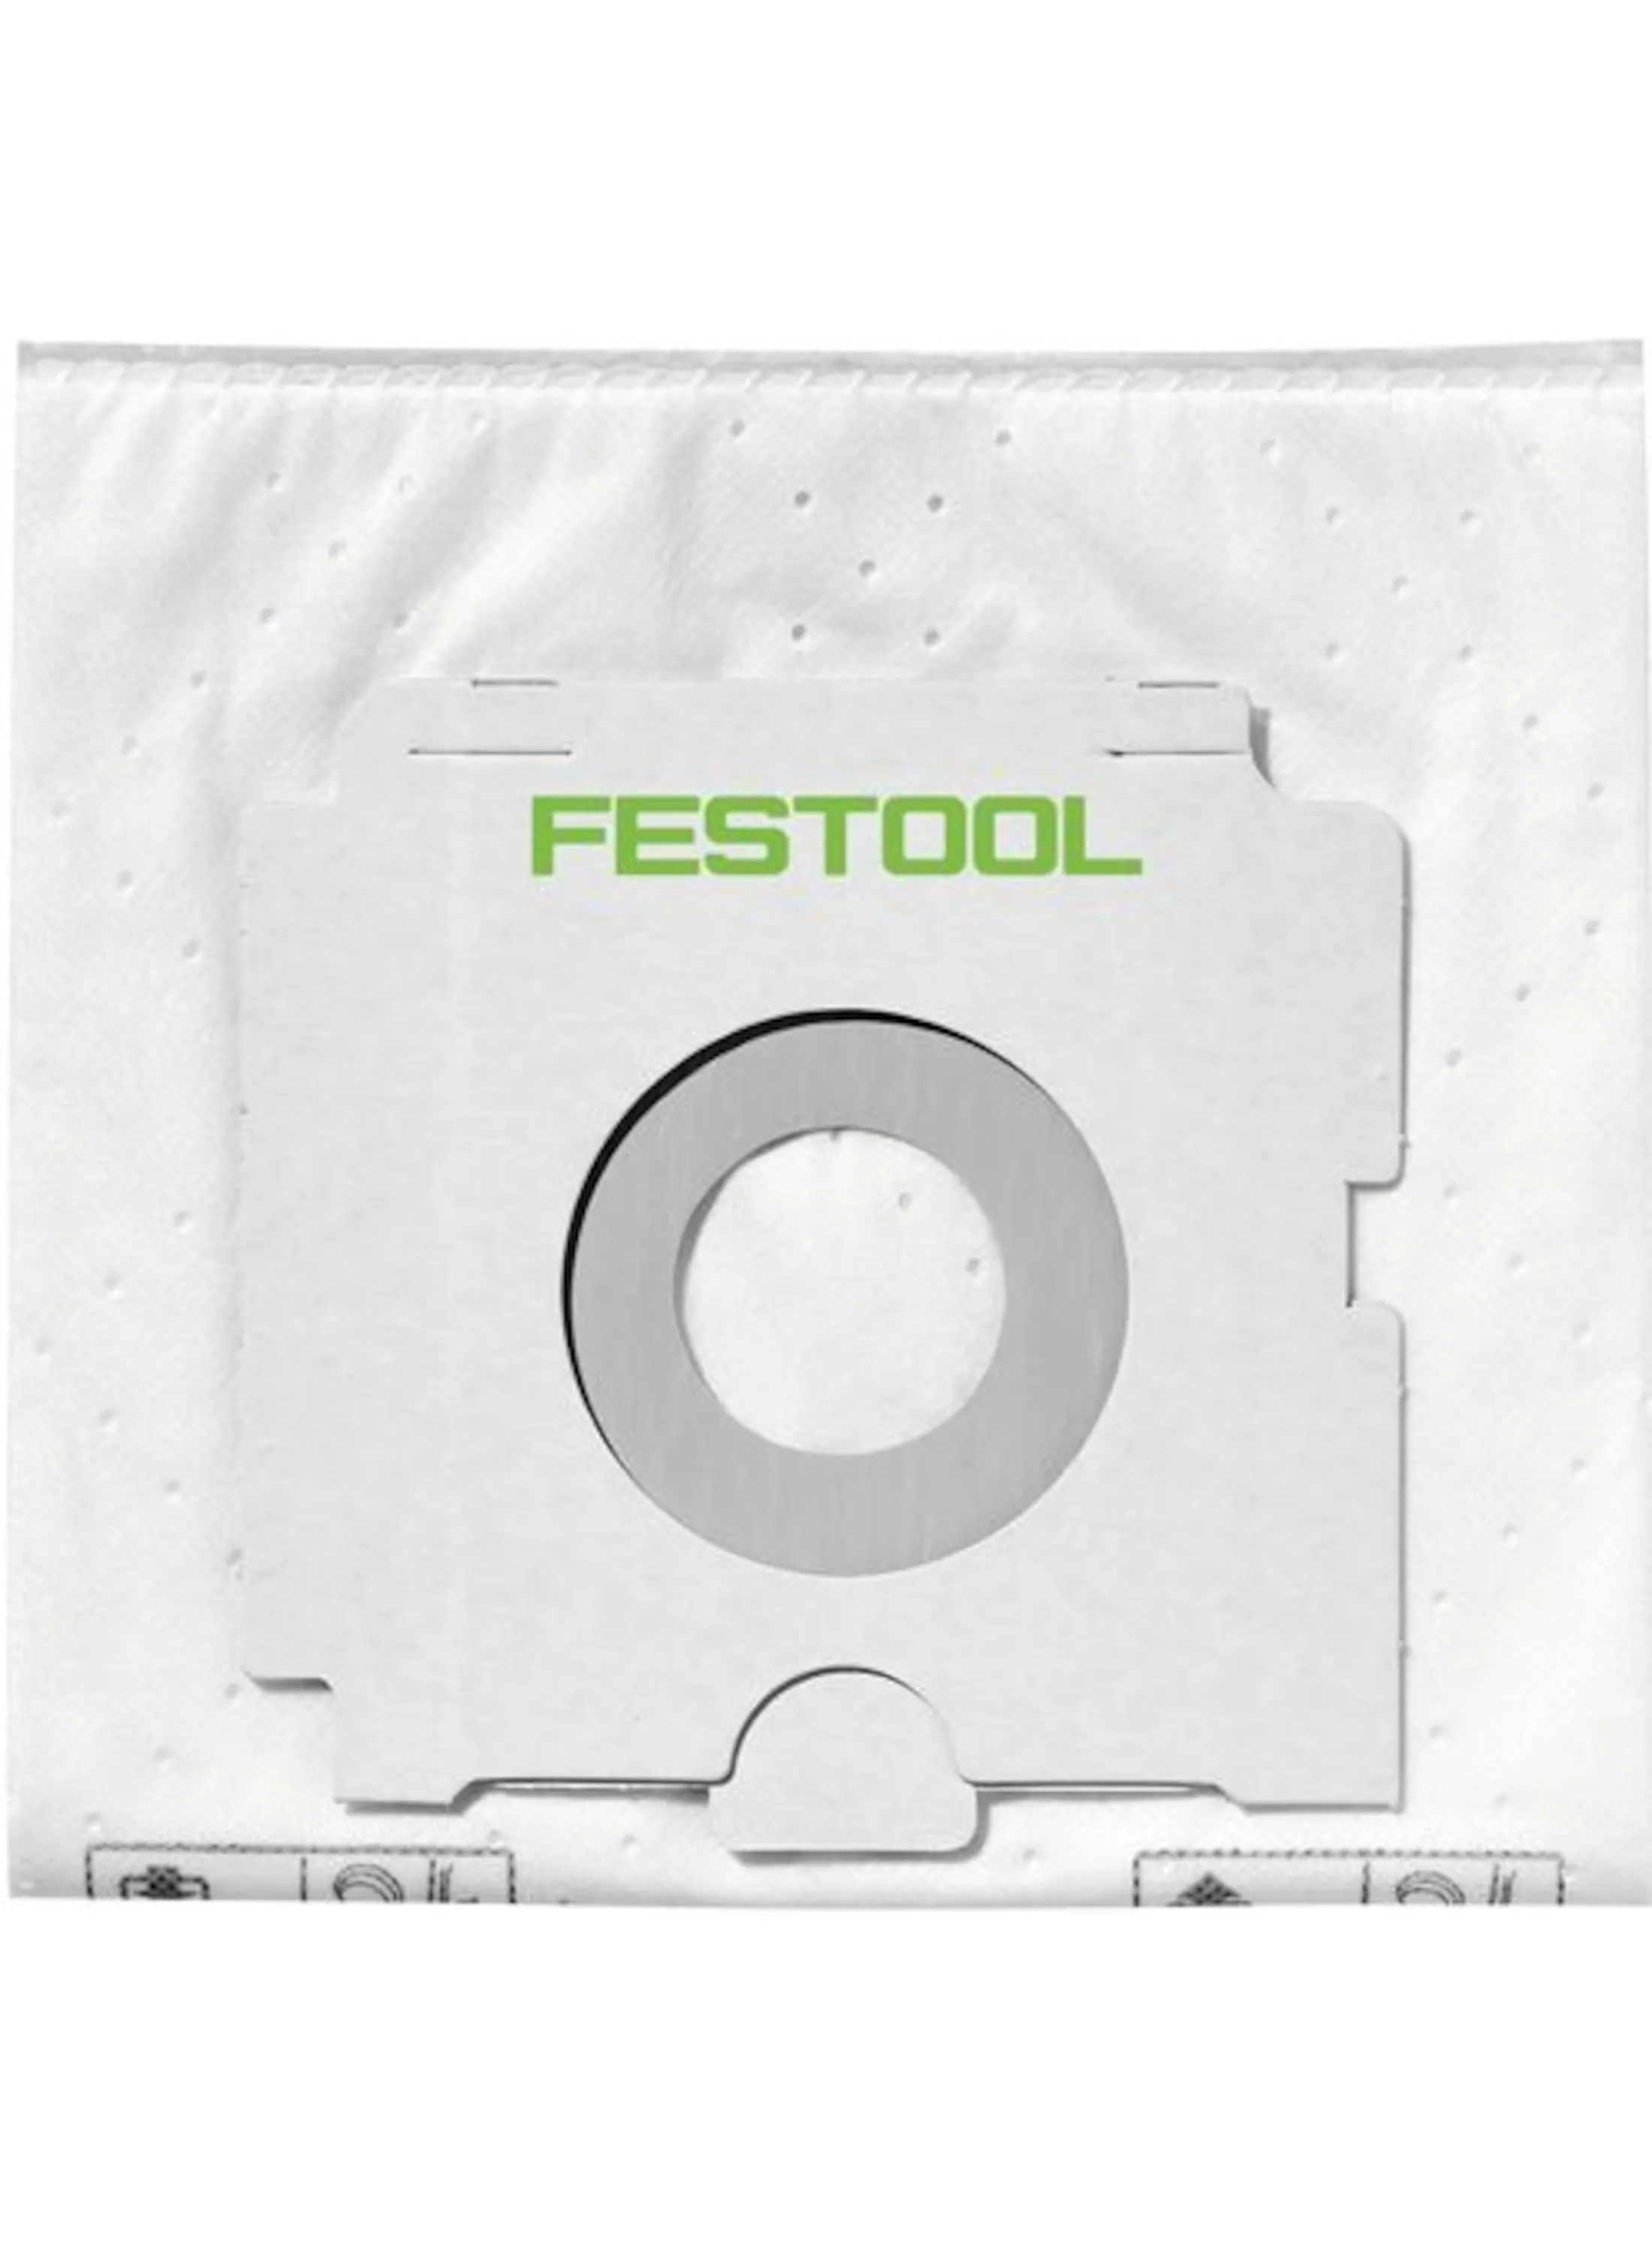 Witte filterzak van Festool, gemaakt uit een textiel vlies.